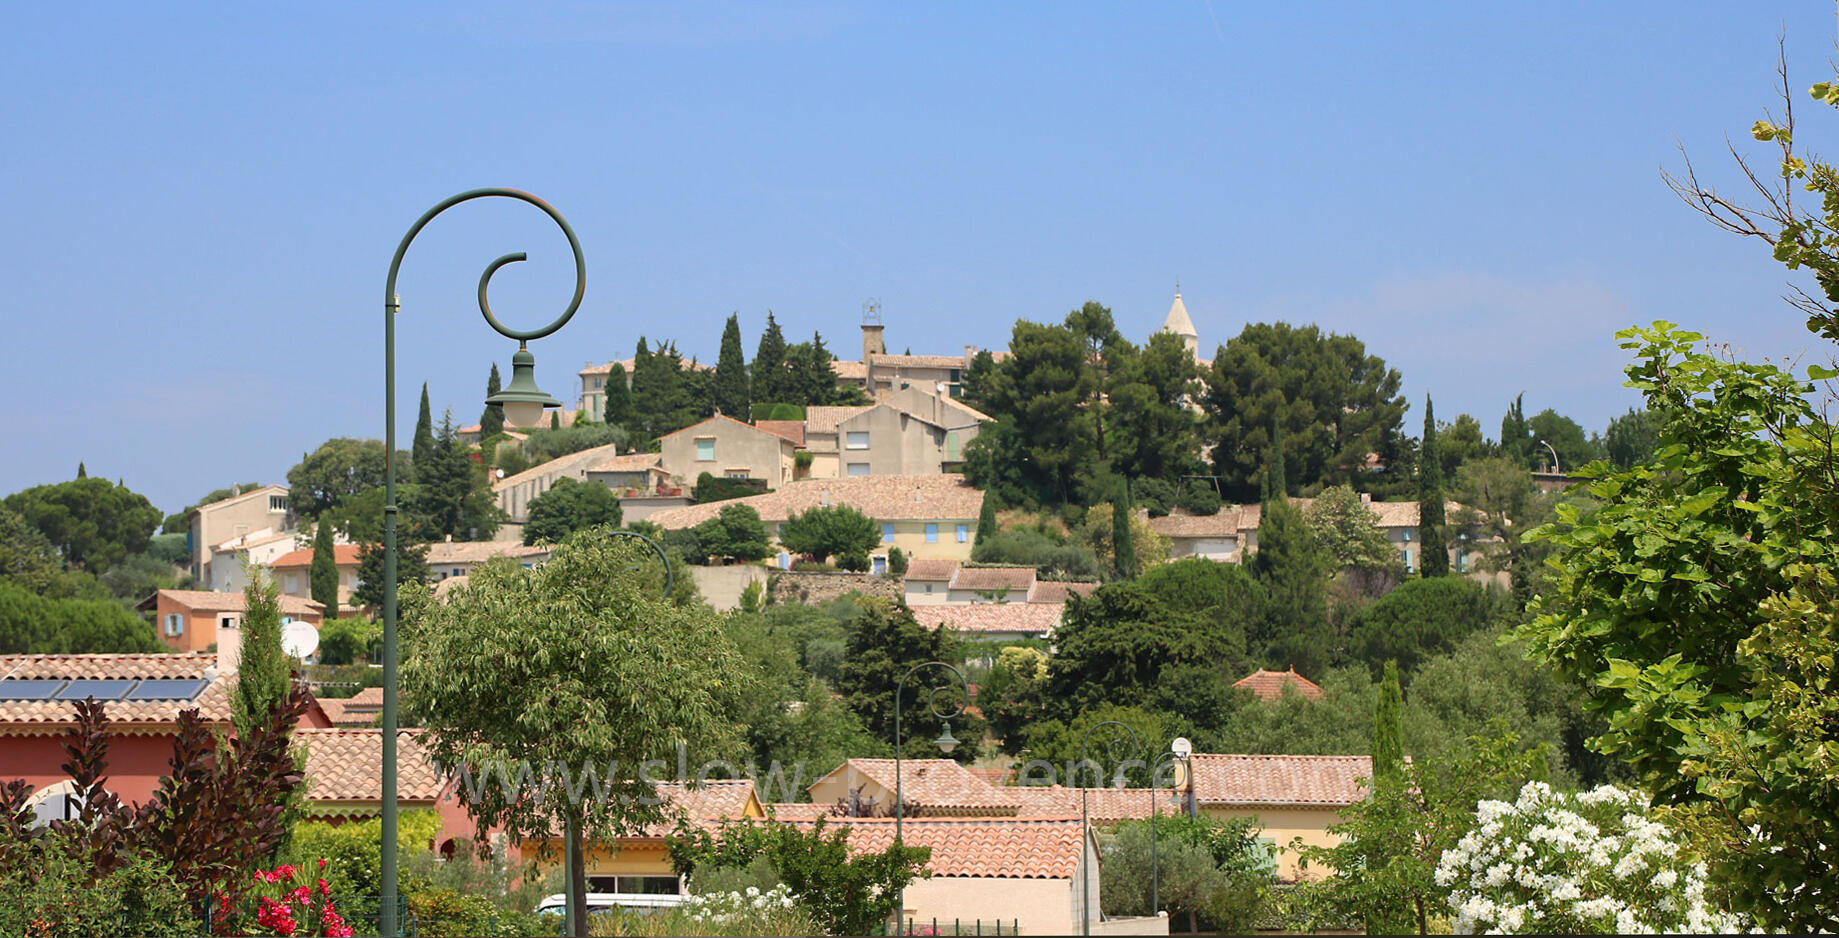 Cairanne, joli village connu pour son vin rouge Côtes du Rhone